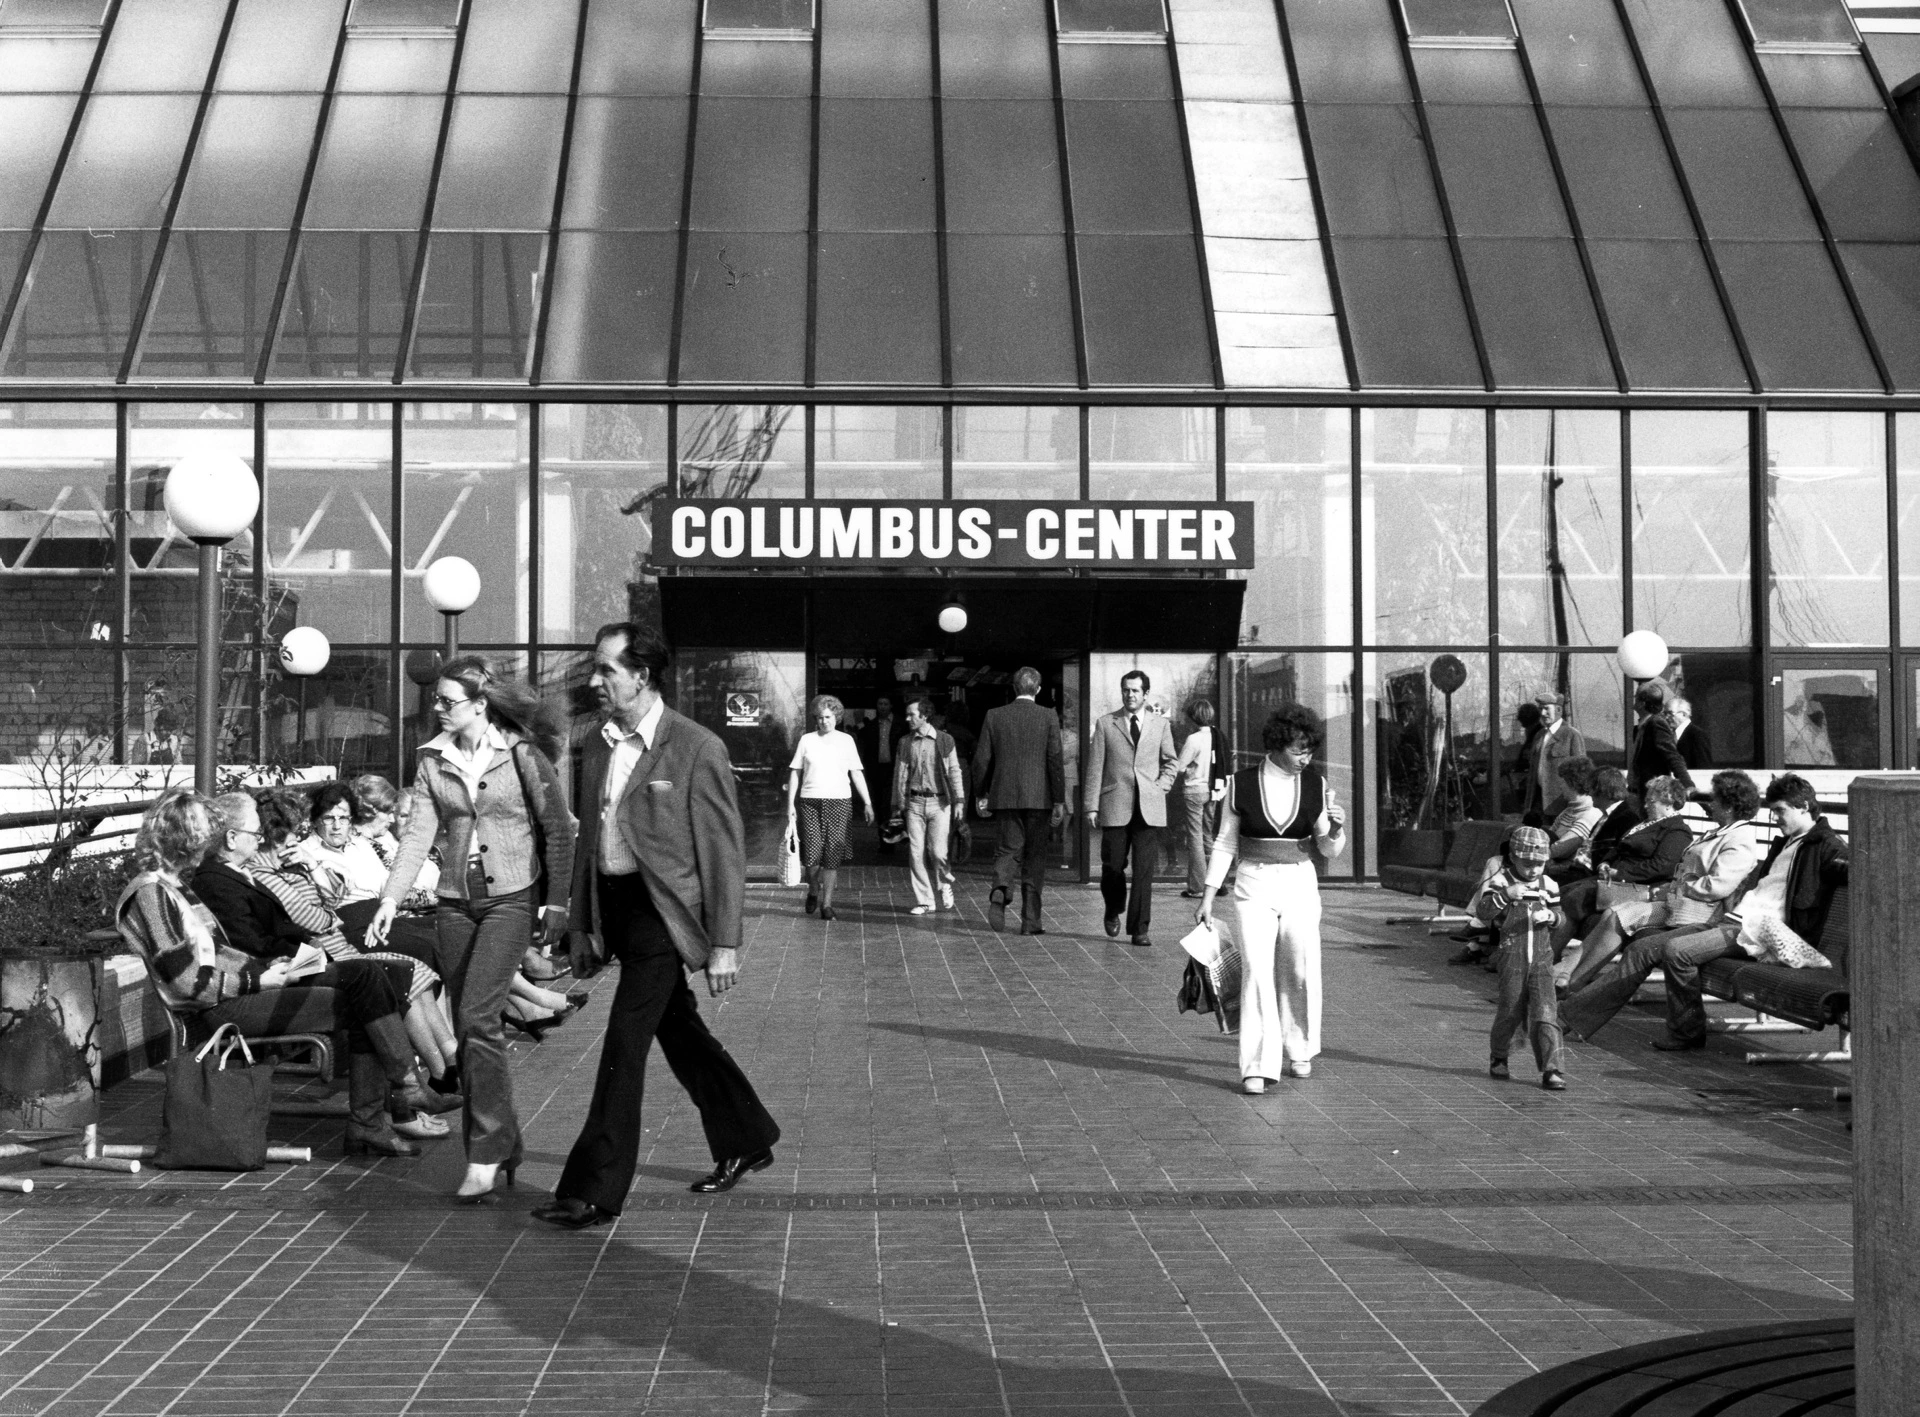 Menschen in Schlaghosen vor dem Eingang des Columbus-Centers